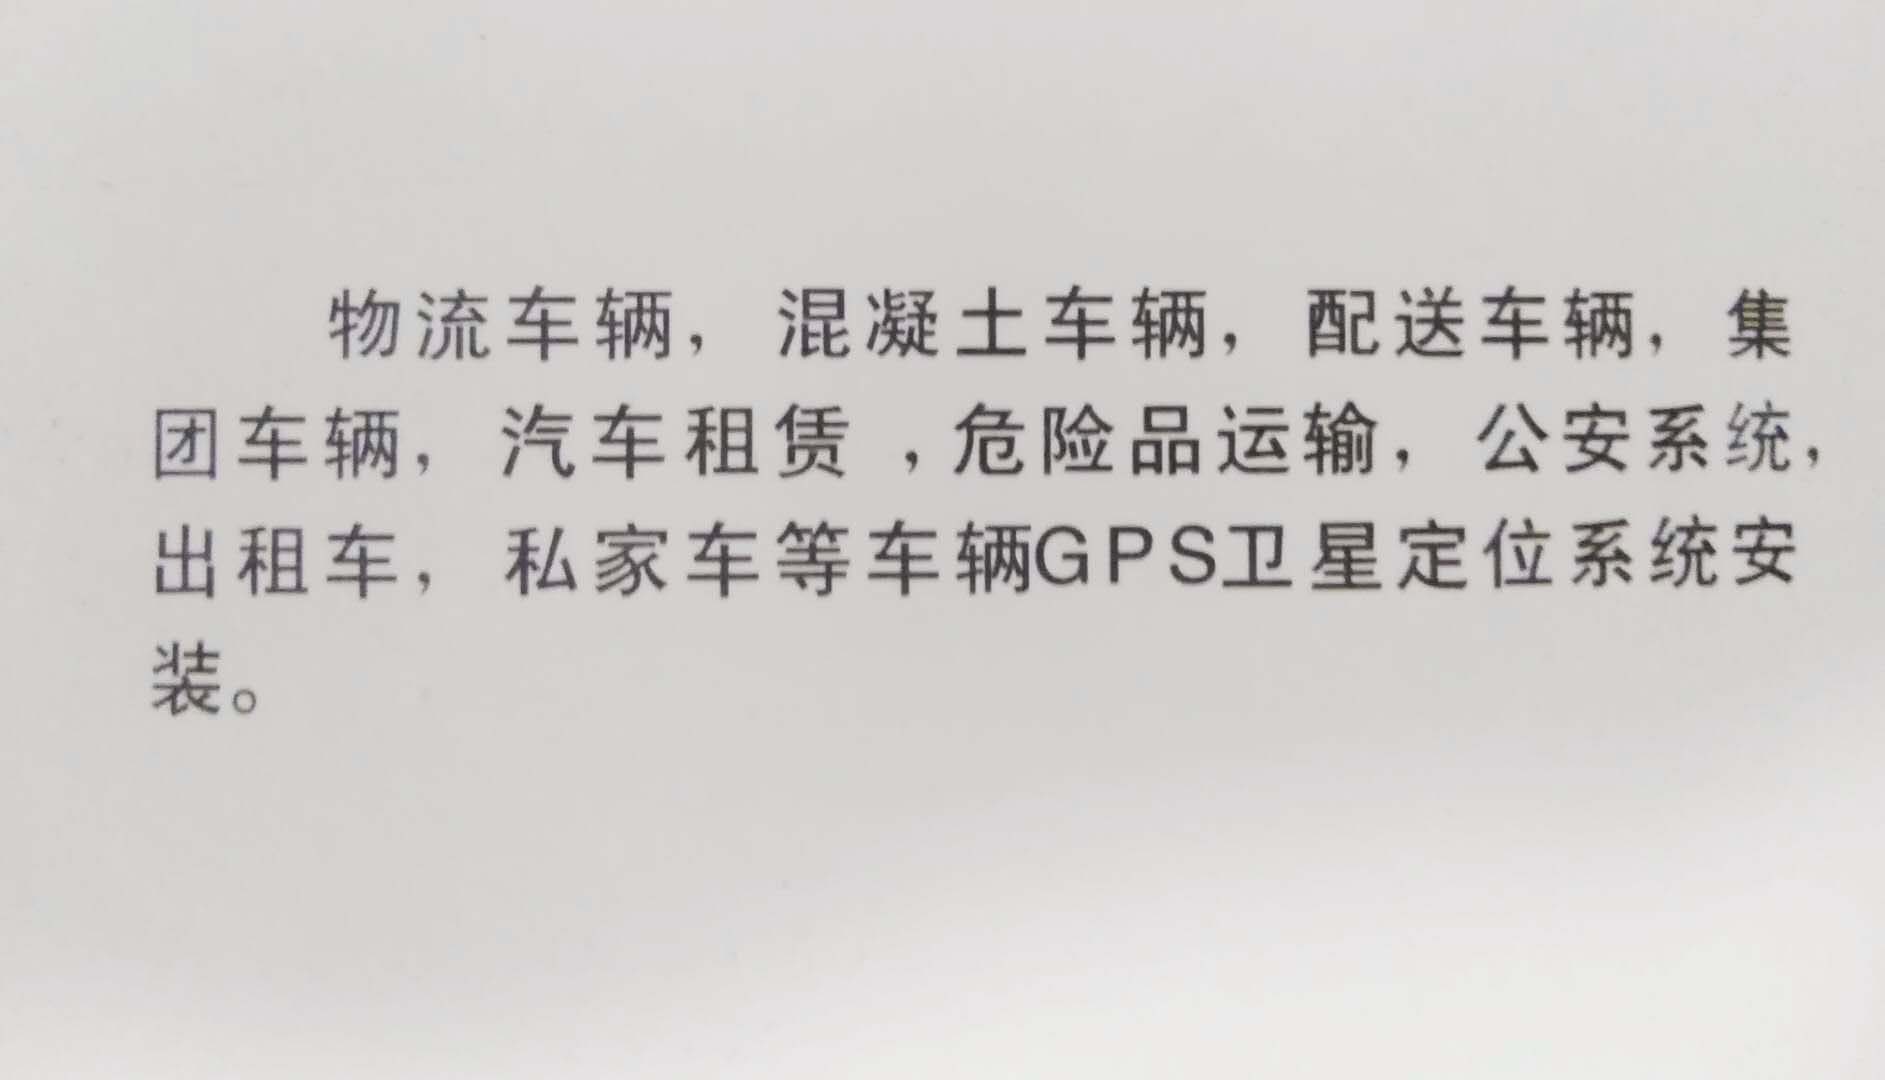 天津车载3G视频-gps管理,北斗GPS定位,集团GPS调度系统